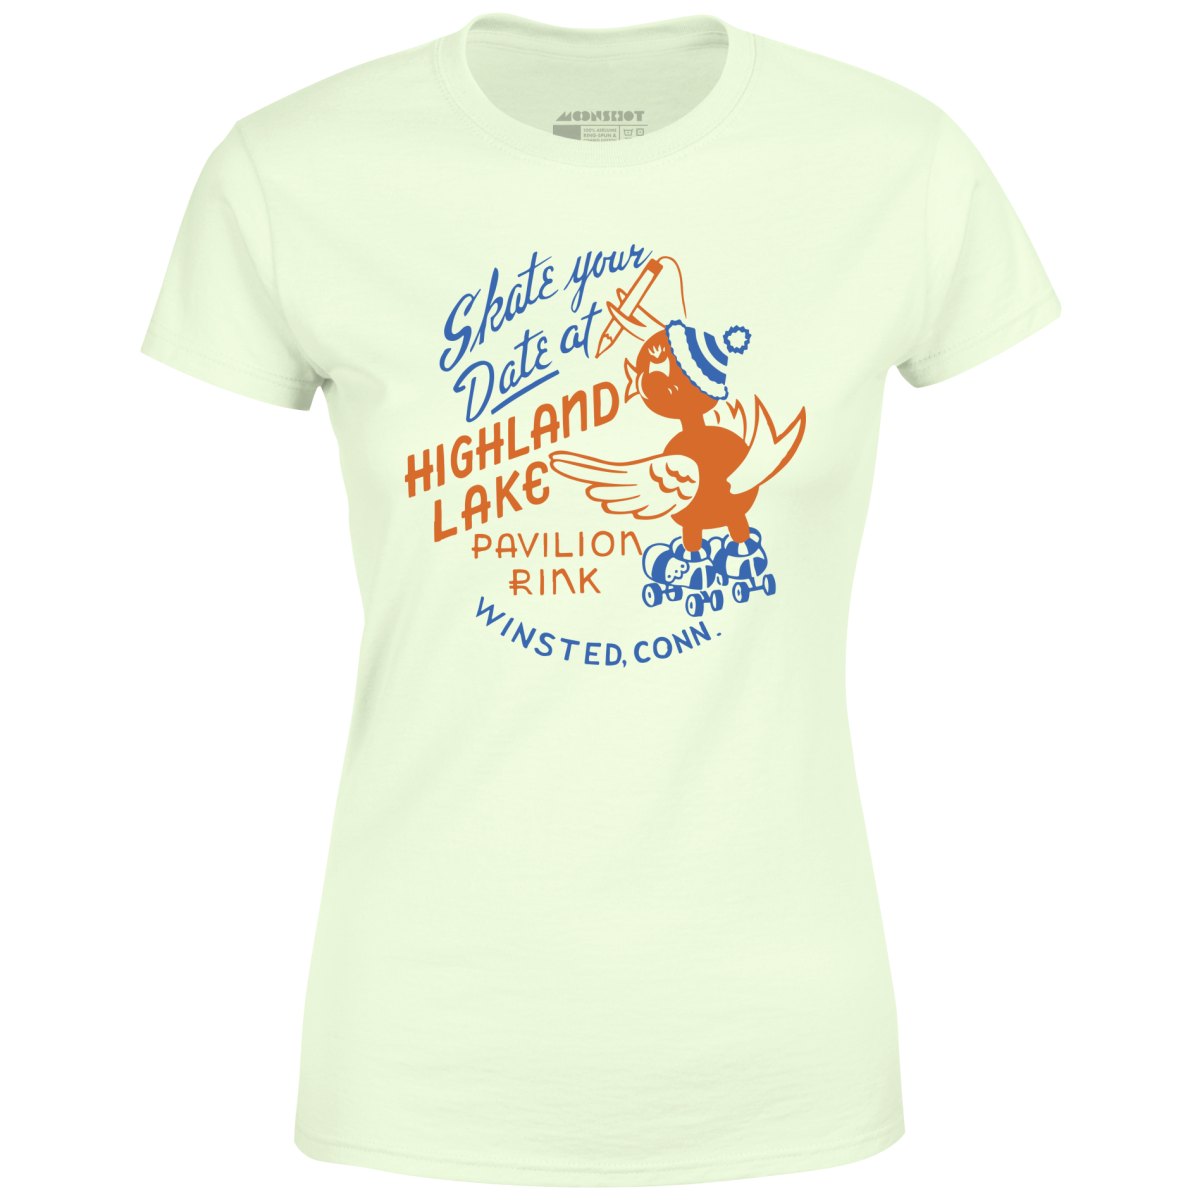 Highland Lake Pavilion Rink - Winsted, CT - Vintage Roller Rink - Women's T-Shirt